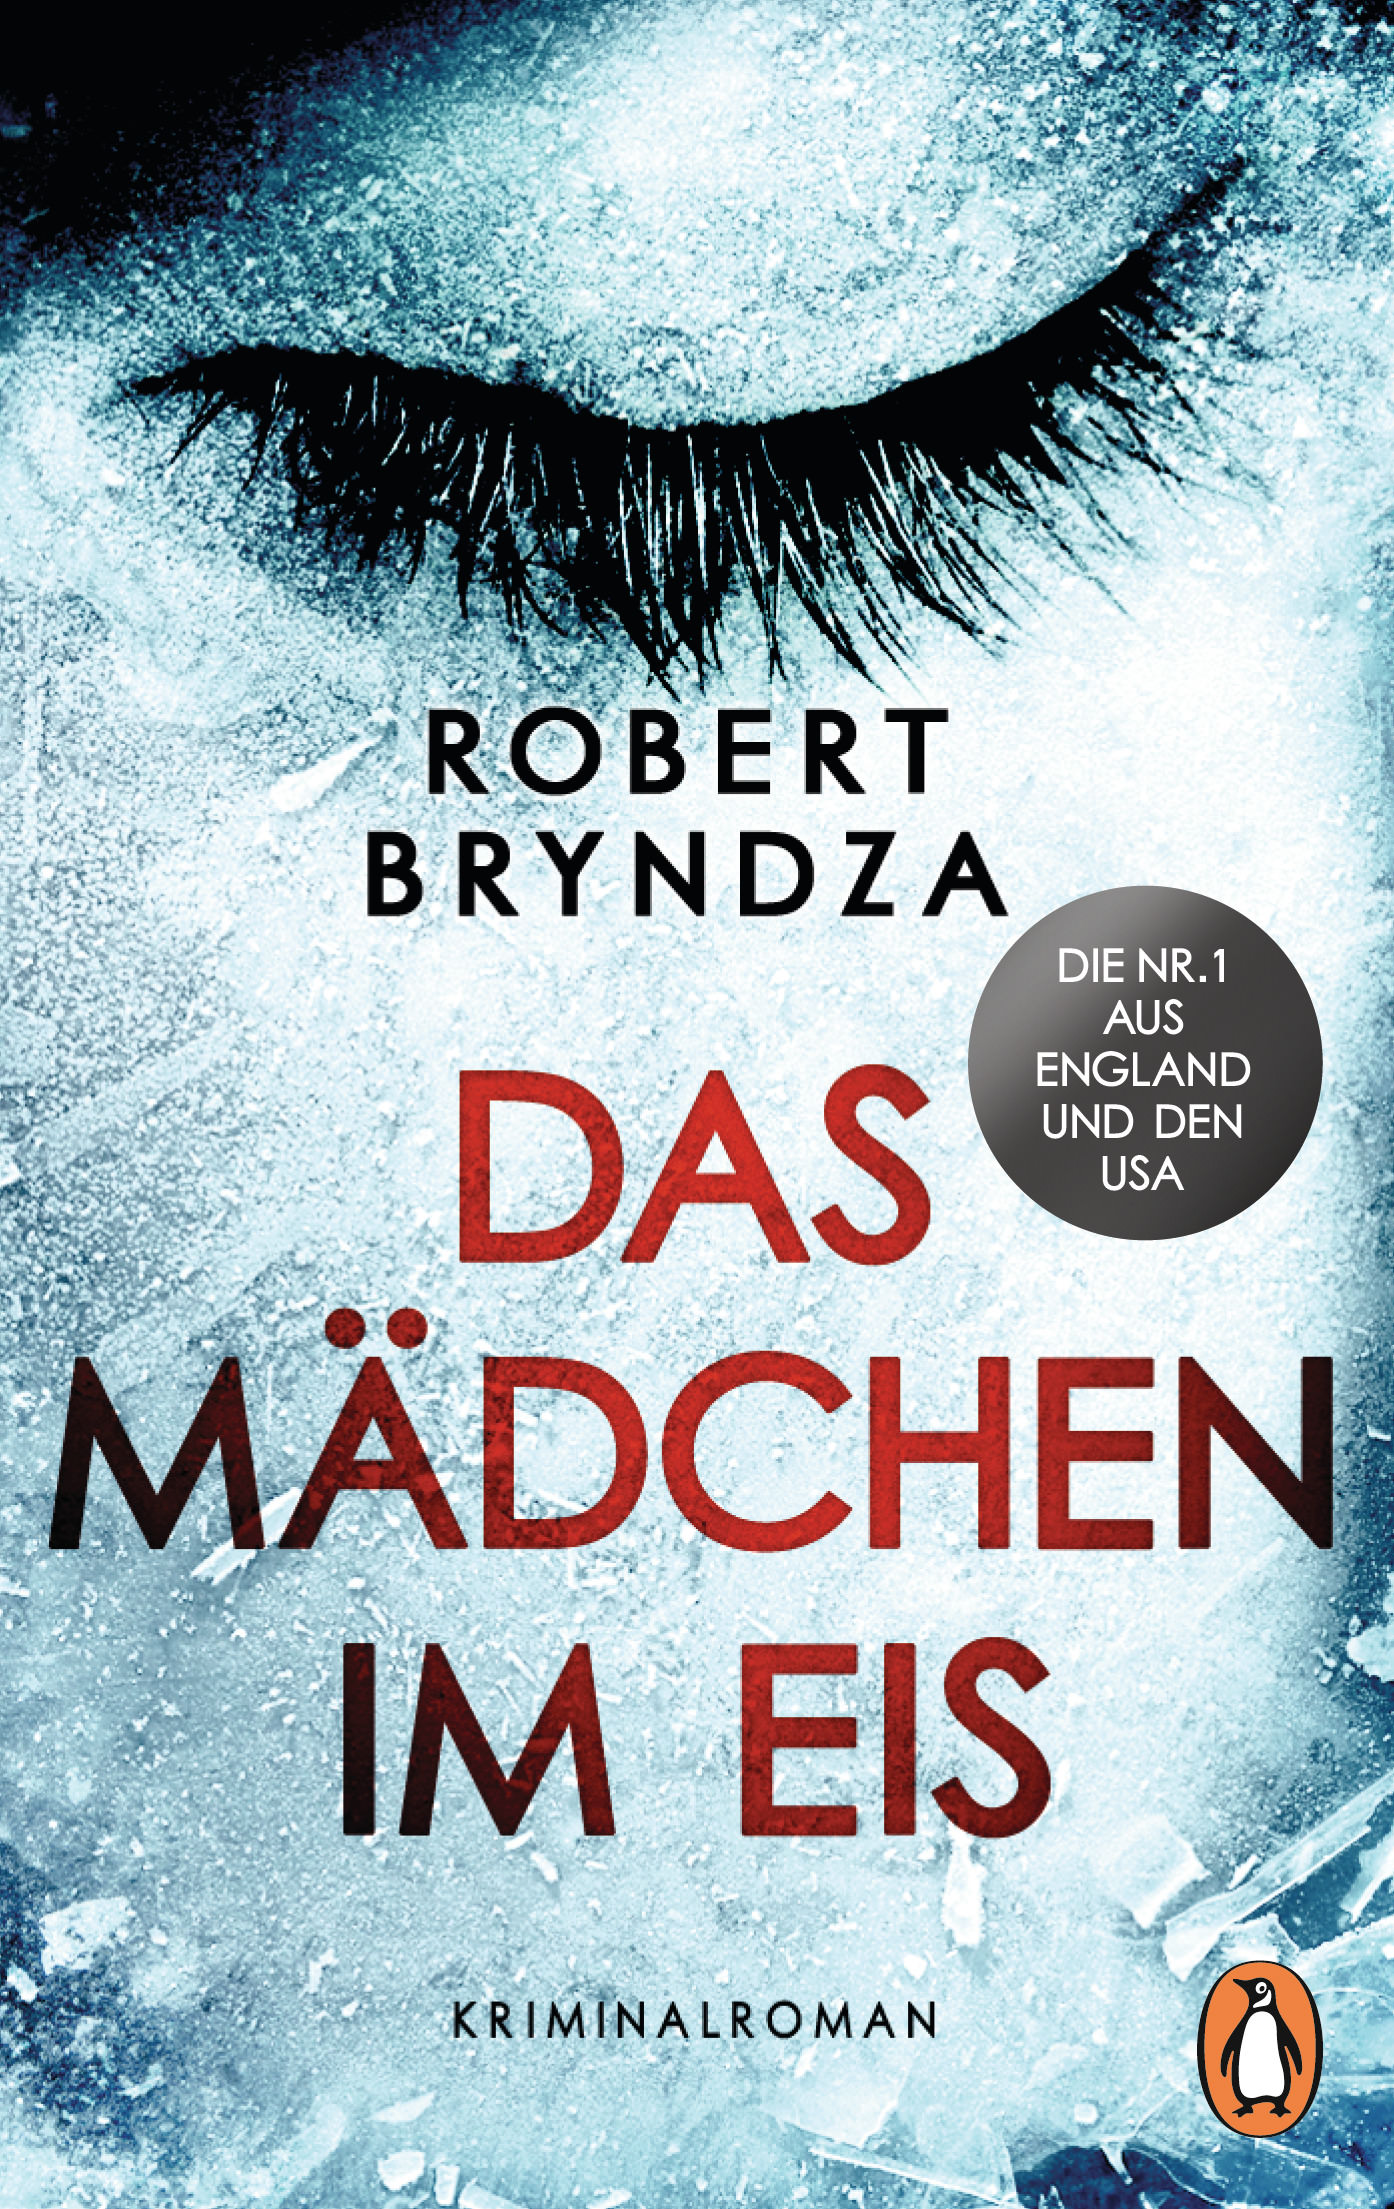 Buchcover: Robert Bryndza: Das Mädchen im Eis. Penguin Verlag